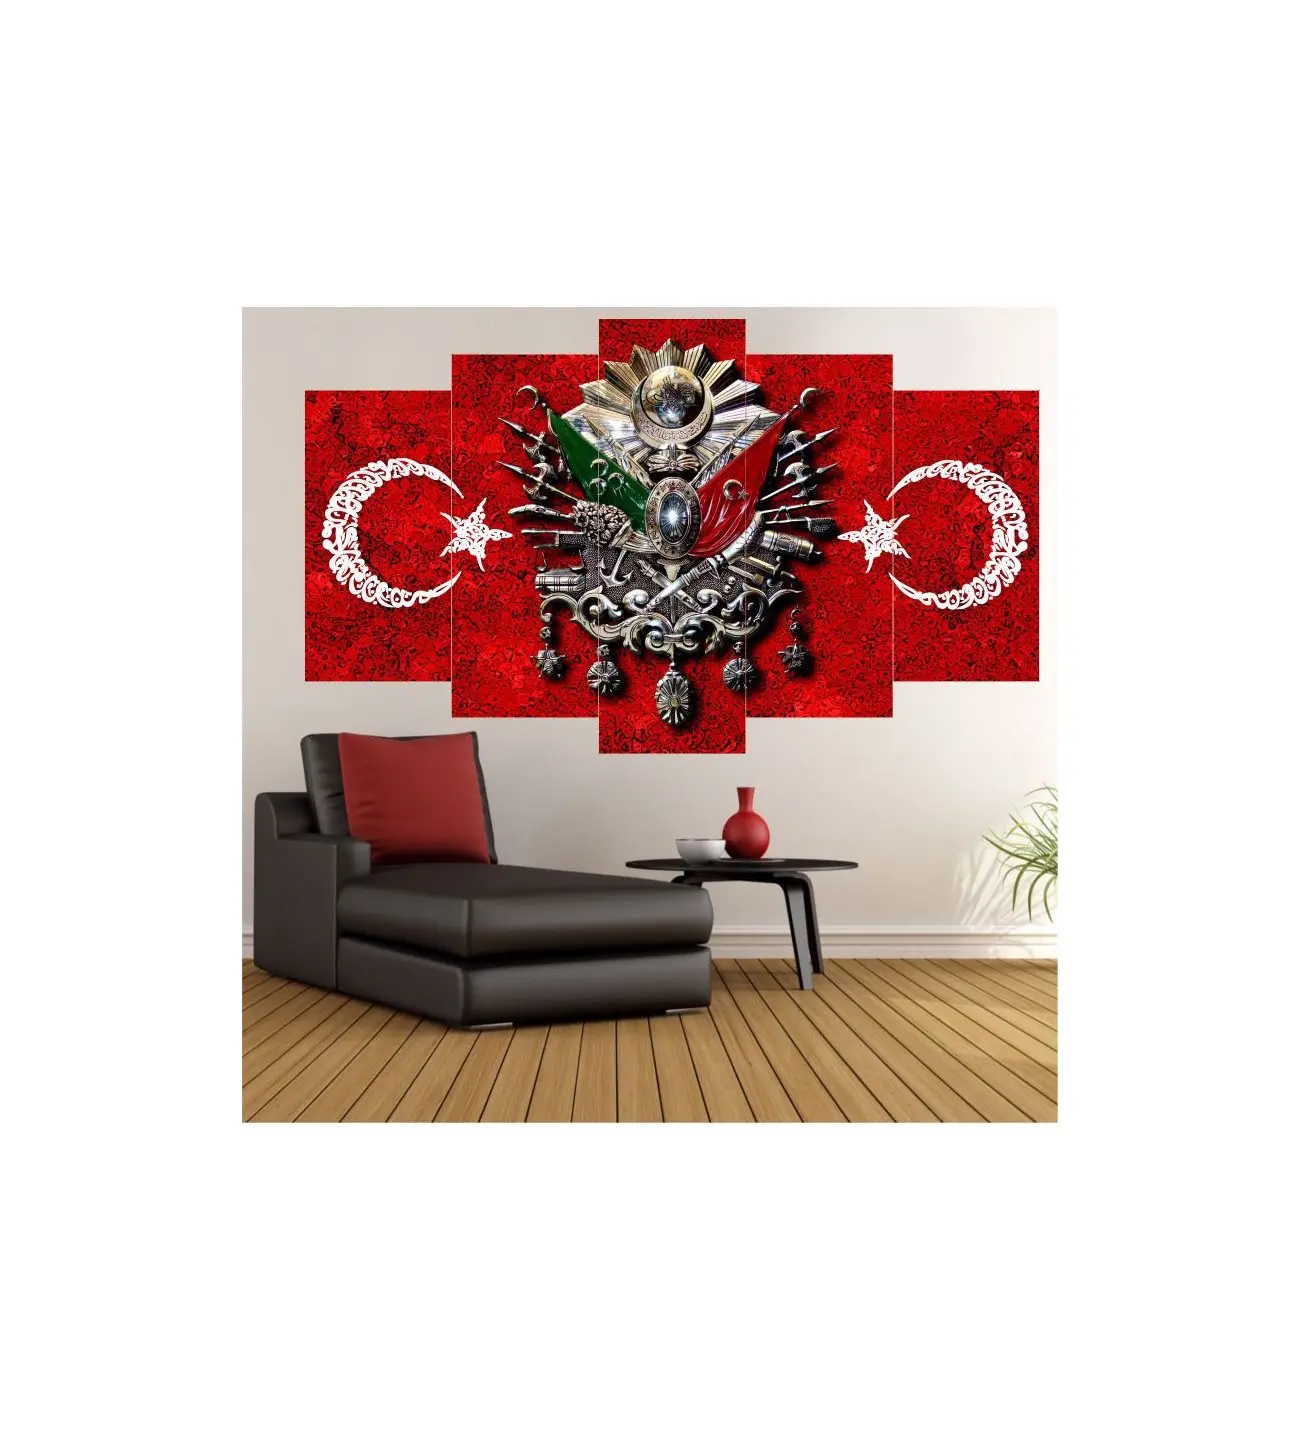 Турецкий османский 5 частей МДФ стол (100x60 см) такелаж луна звезды Лучшая